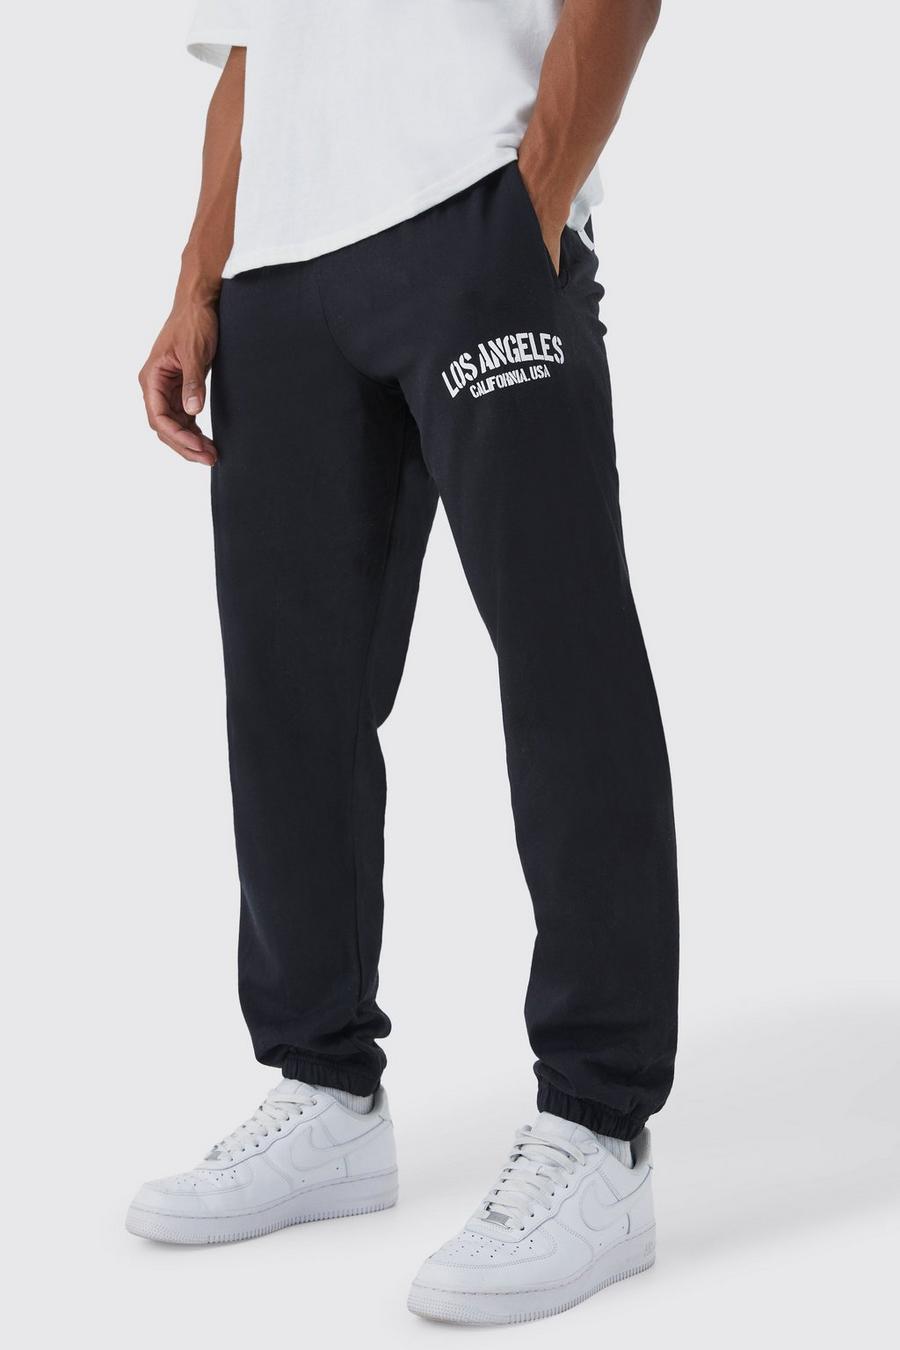 Pantalón deportivo oversize con estampado Los Angeles, Black image number 1